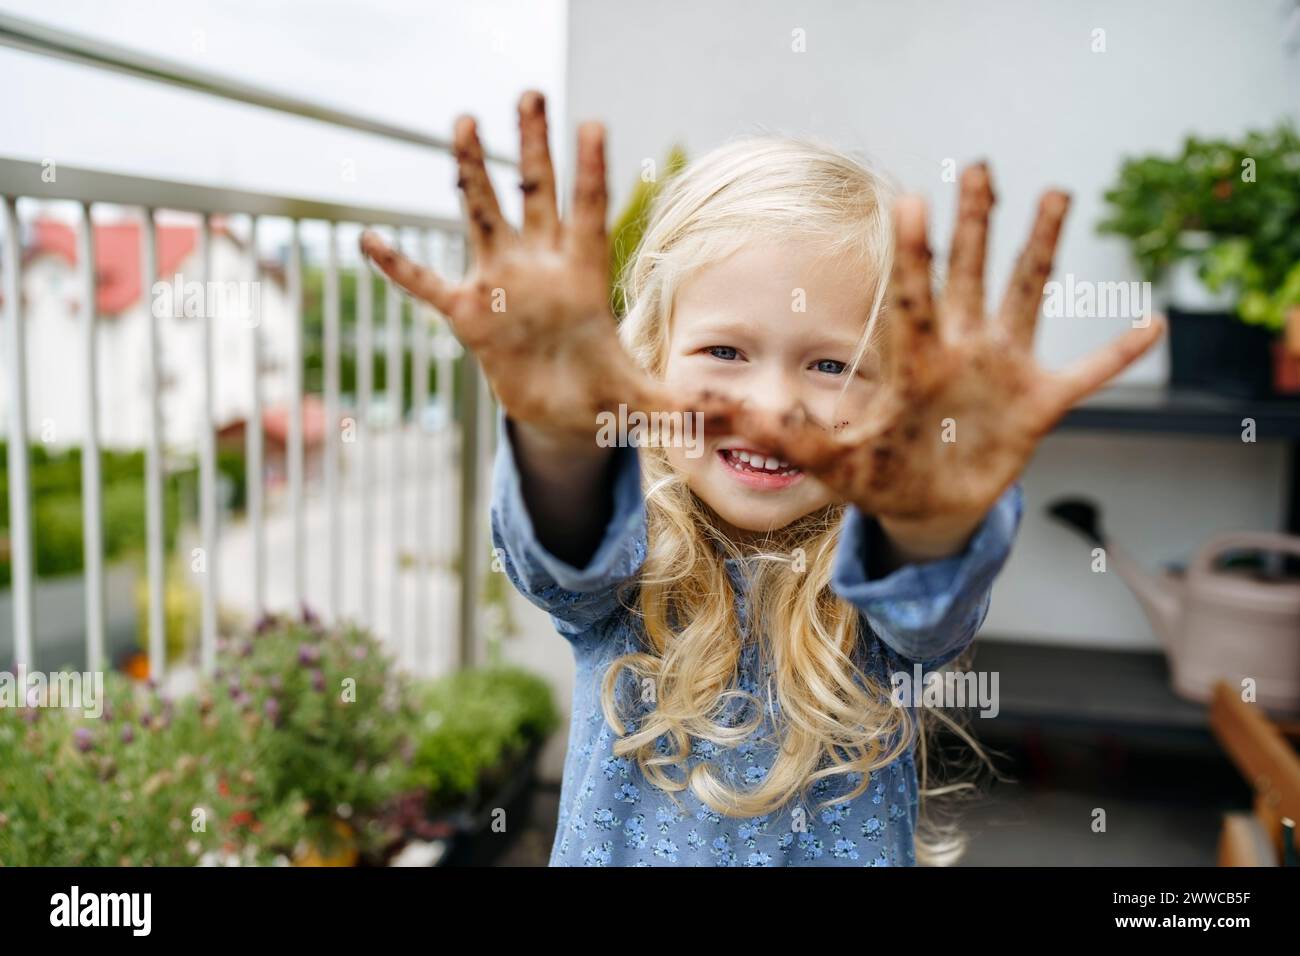 Lächelndes Mädchen, das Hände auf dem Balkon mit Dreck bedeckt zeigt Stockfoto